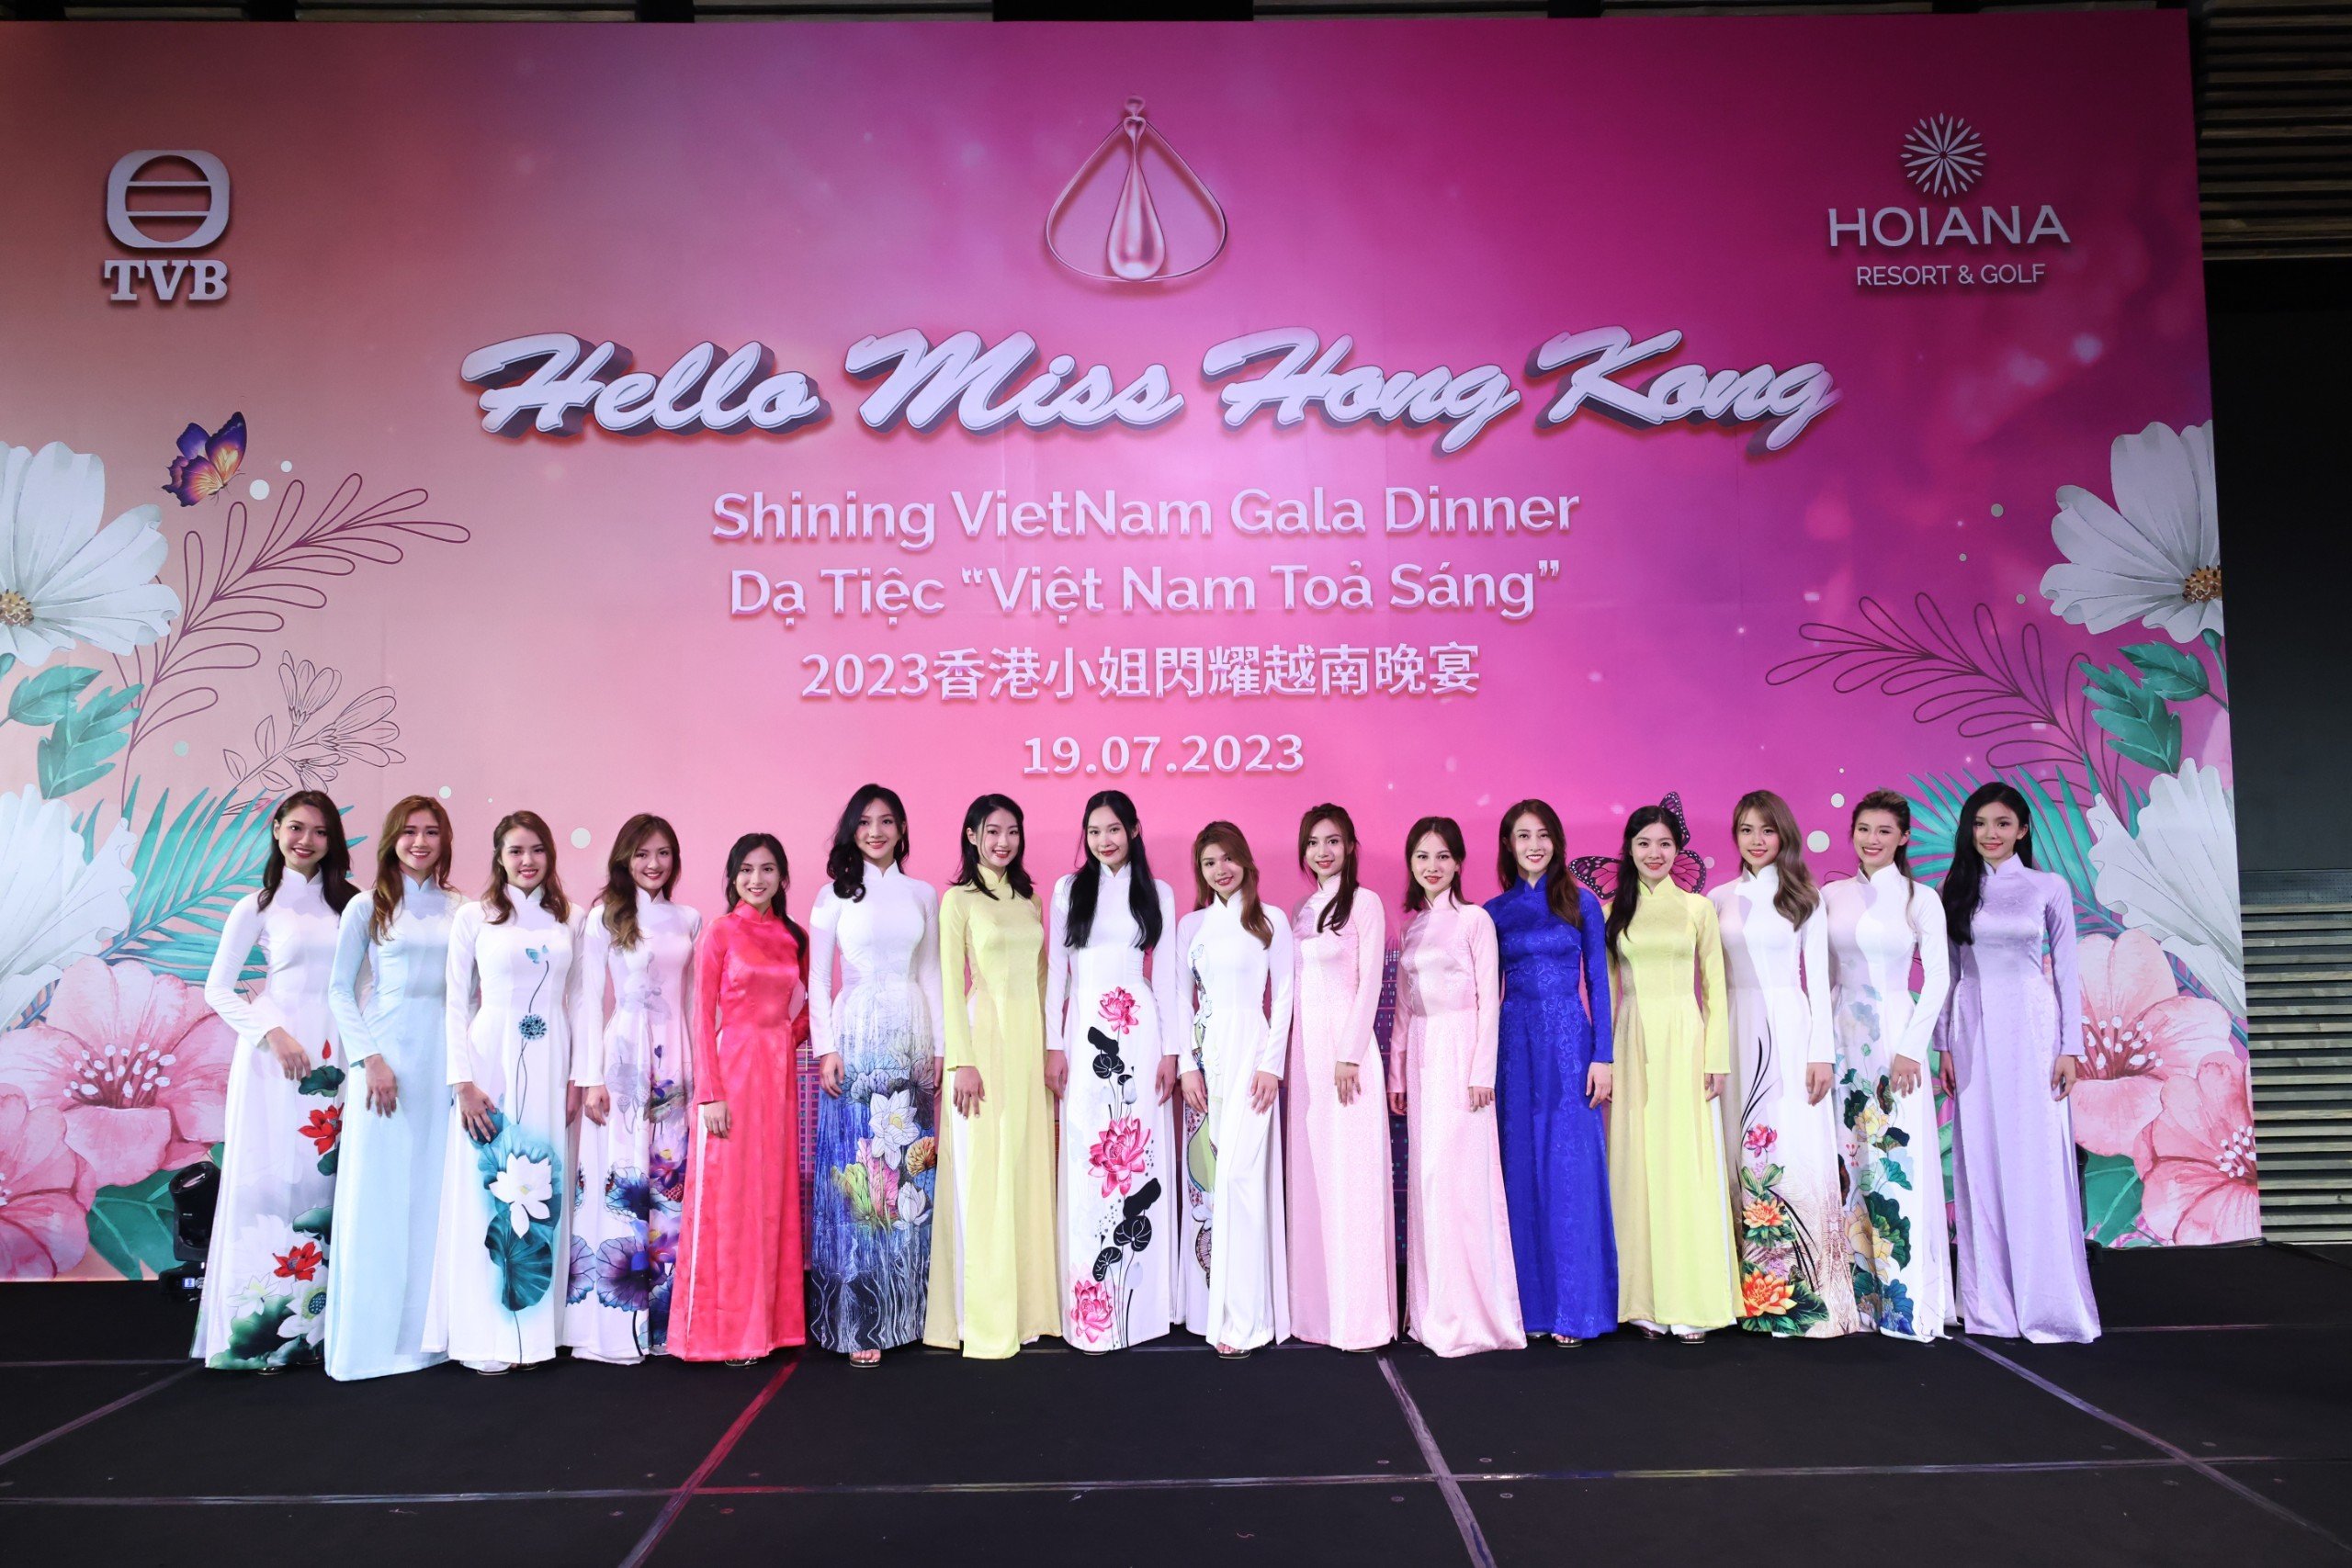 Giới thiệu cảnh sắc và văn hóa Việt Nam thông qua cuộc thi Hoa Hậu Hồng Kông 2023